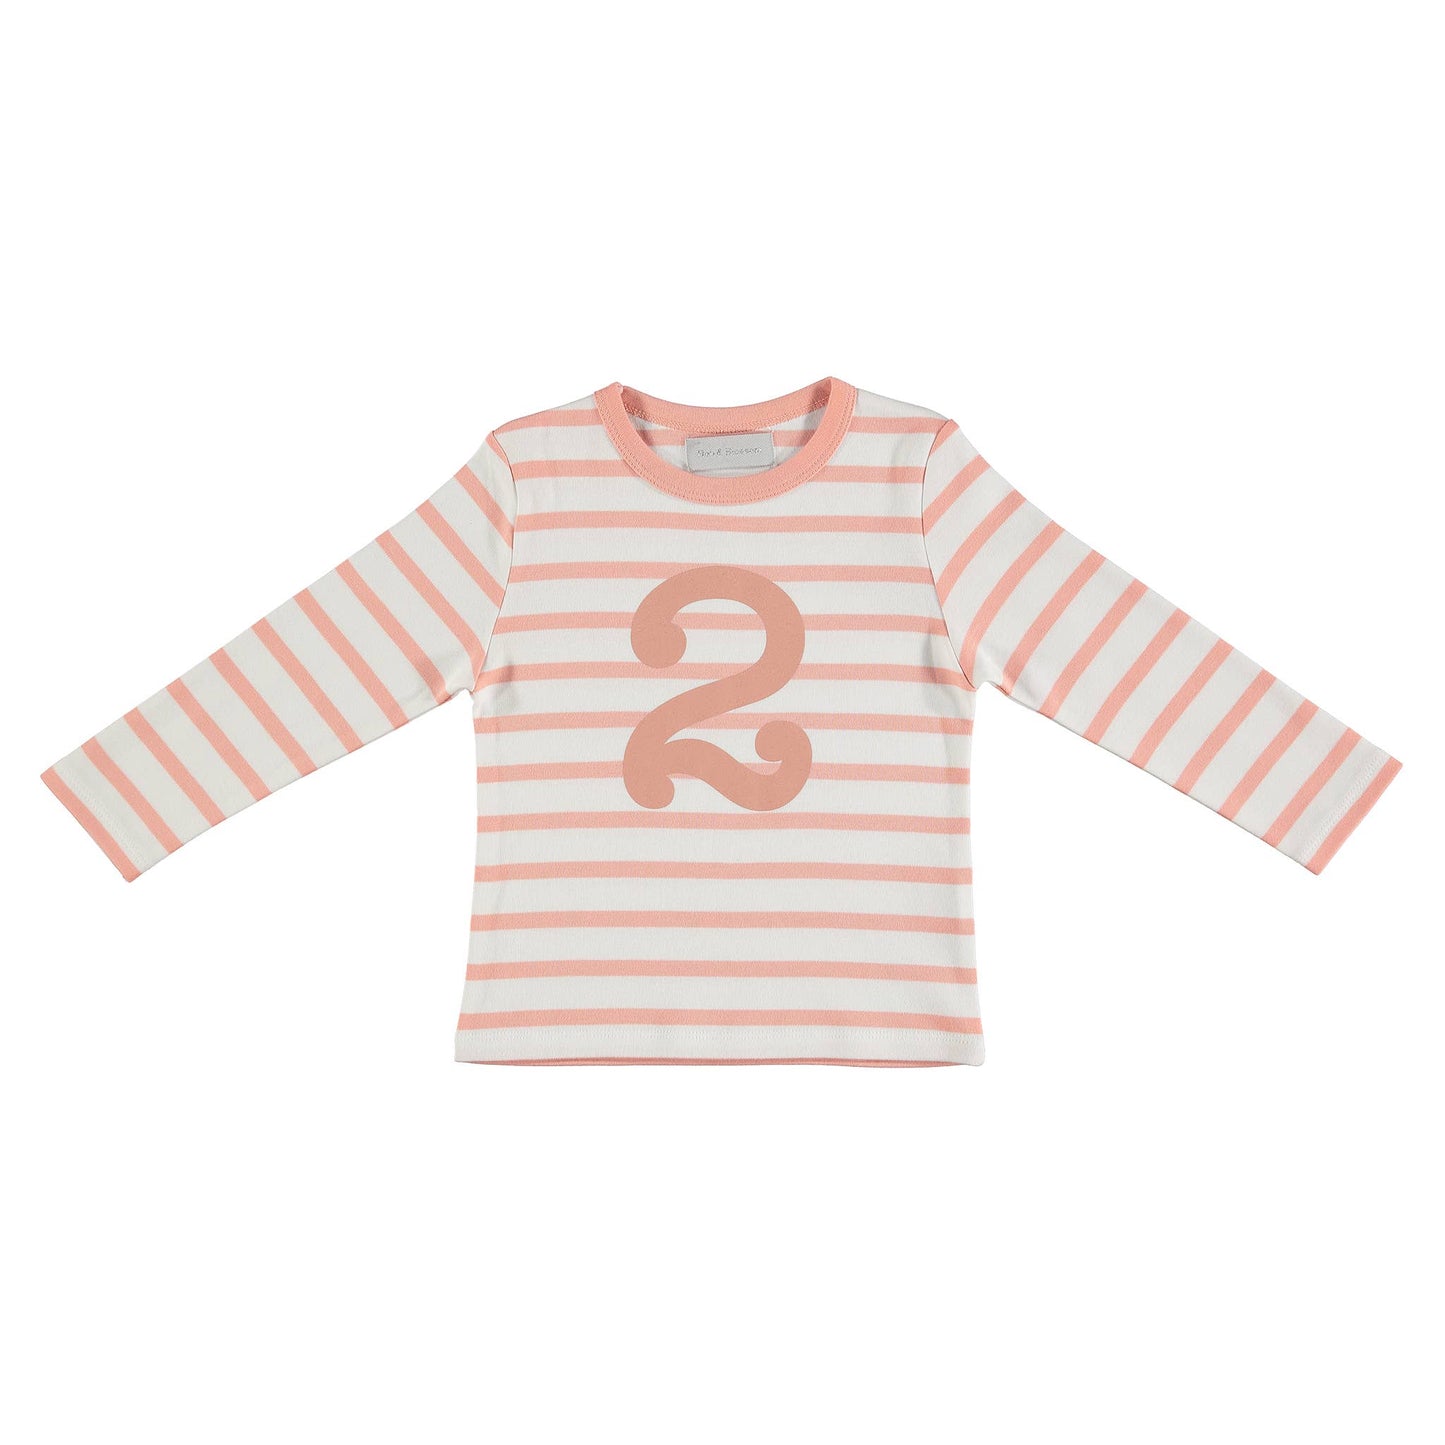 Shrimp & White 2 (Pink) Shirt